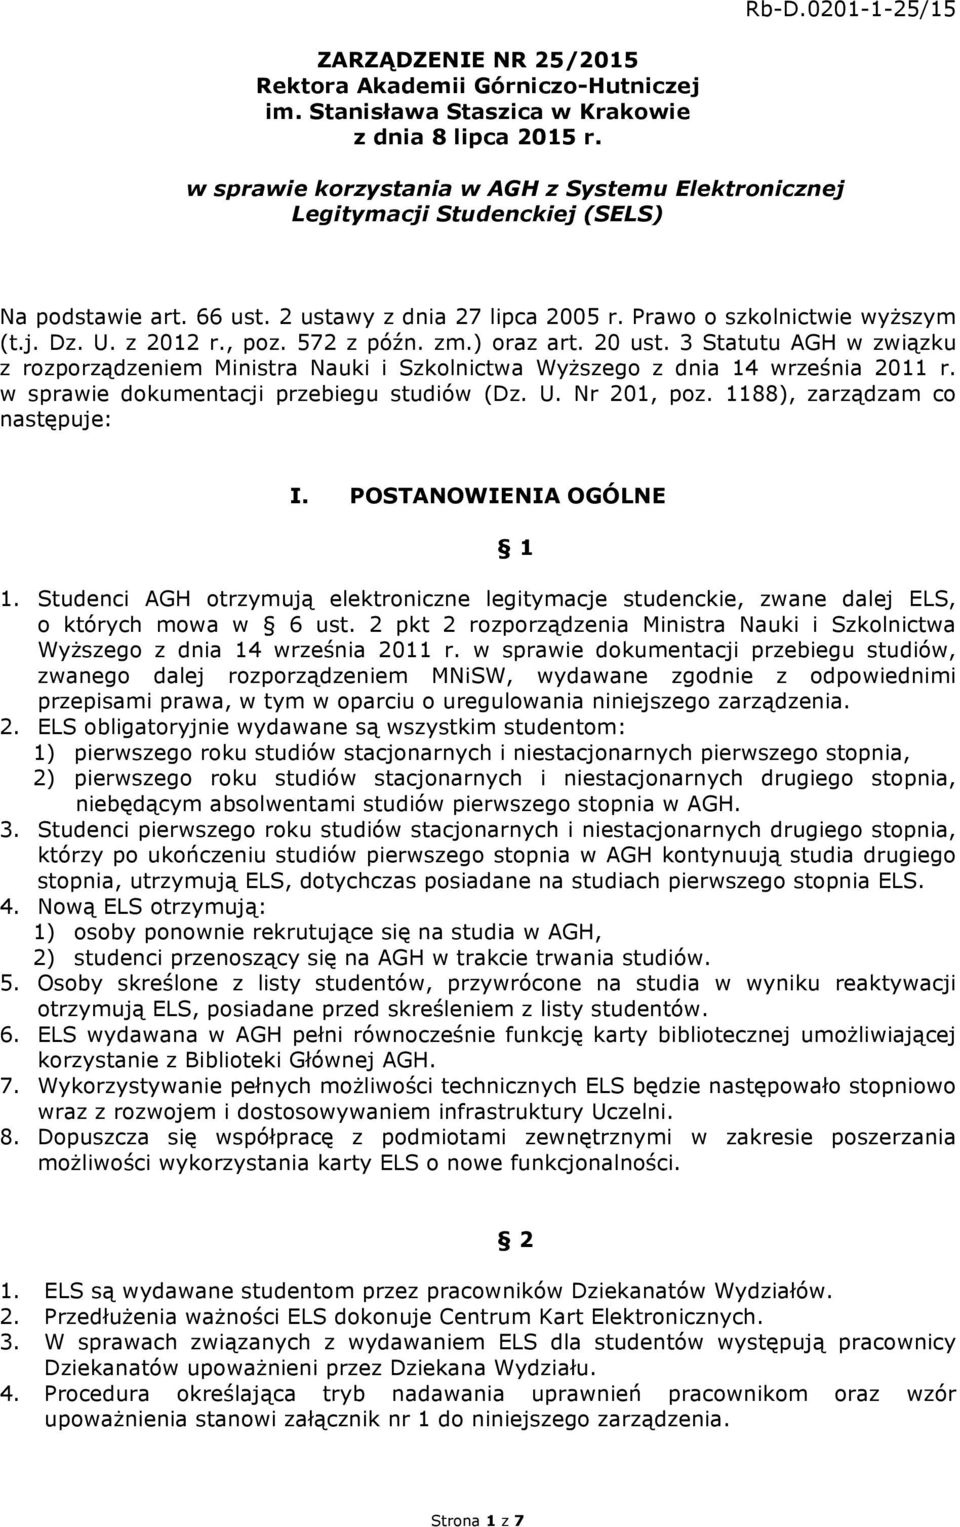 572 z późn. zm.) oraz art. 20 ust. 3 Statutu AGH w związku z rozporządzeniem Ministra Nauki i Szkolnictwa Wyższego z dnia 14 września 2011 r. w sprawie dokumentacji przebiegu studiów (Dz. U.